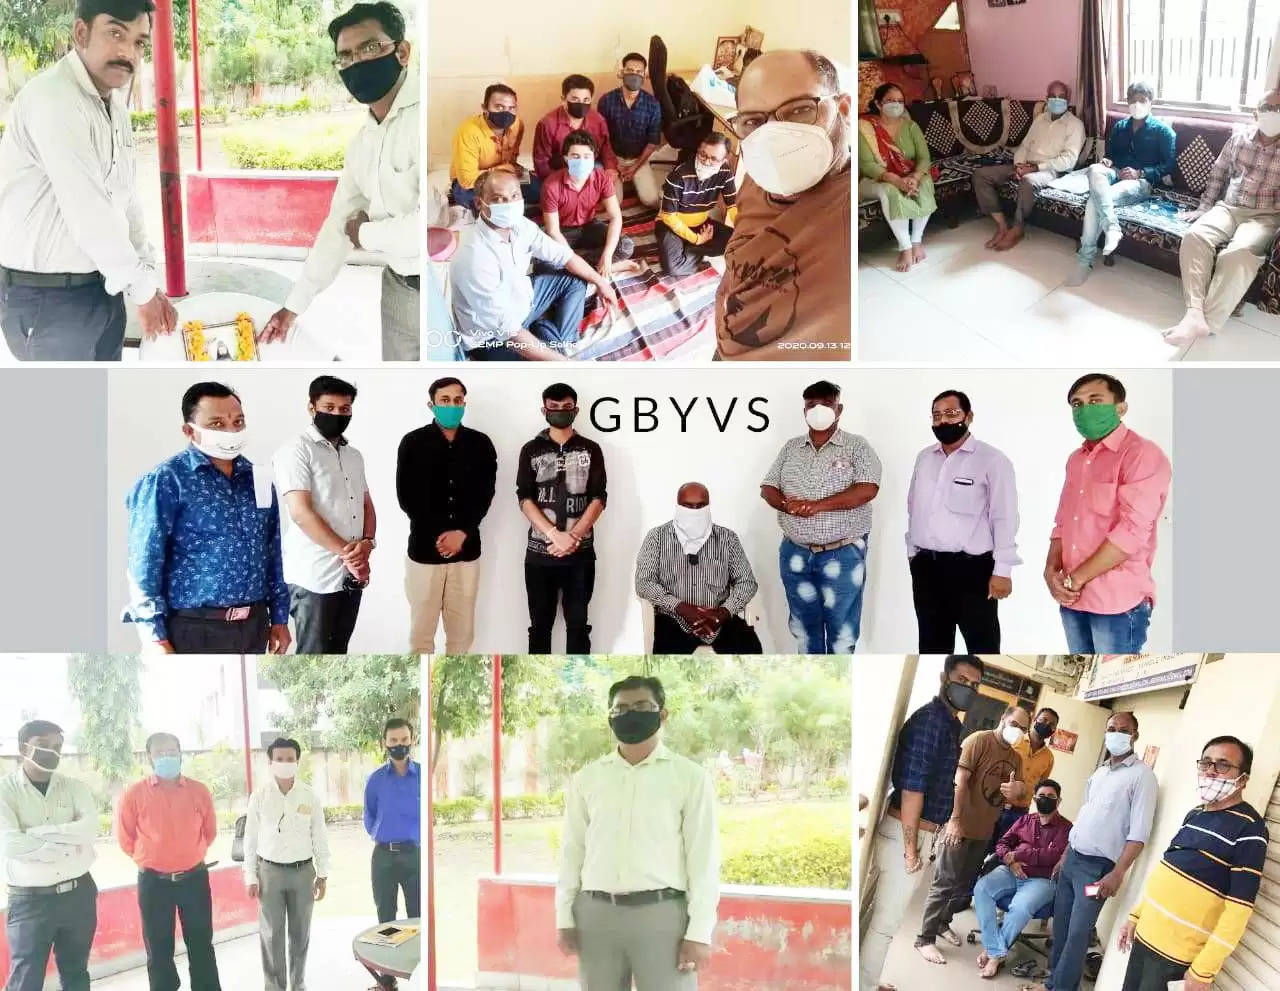 કાર્યક્રમ@ગુજરાત: GBYVS દ્રારા 4 સ્થળે સ્થાનિક હોદ્દેદારોનું સ્નેહ મિલન યોજાયું